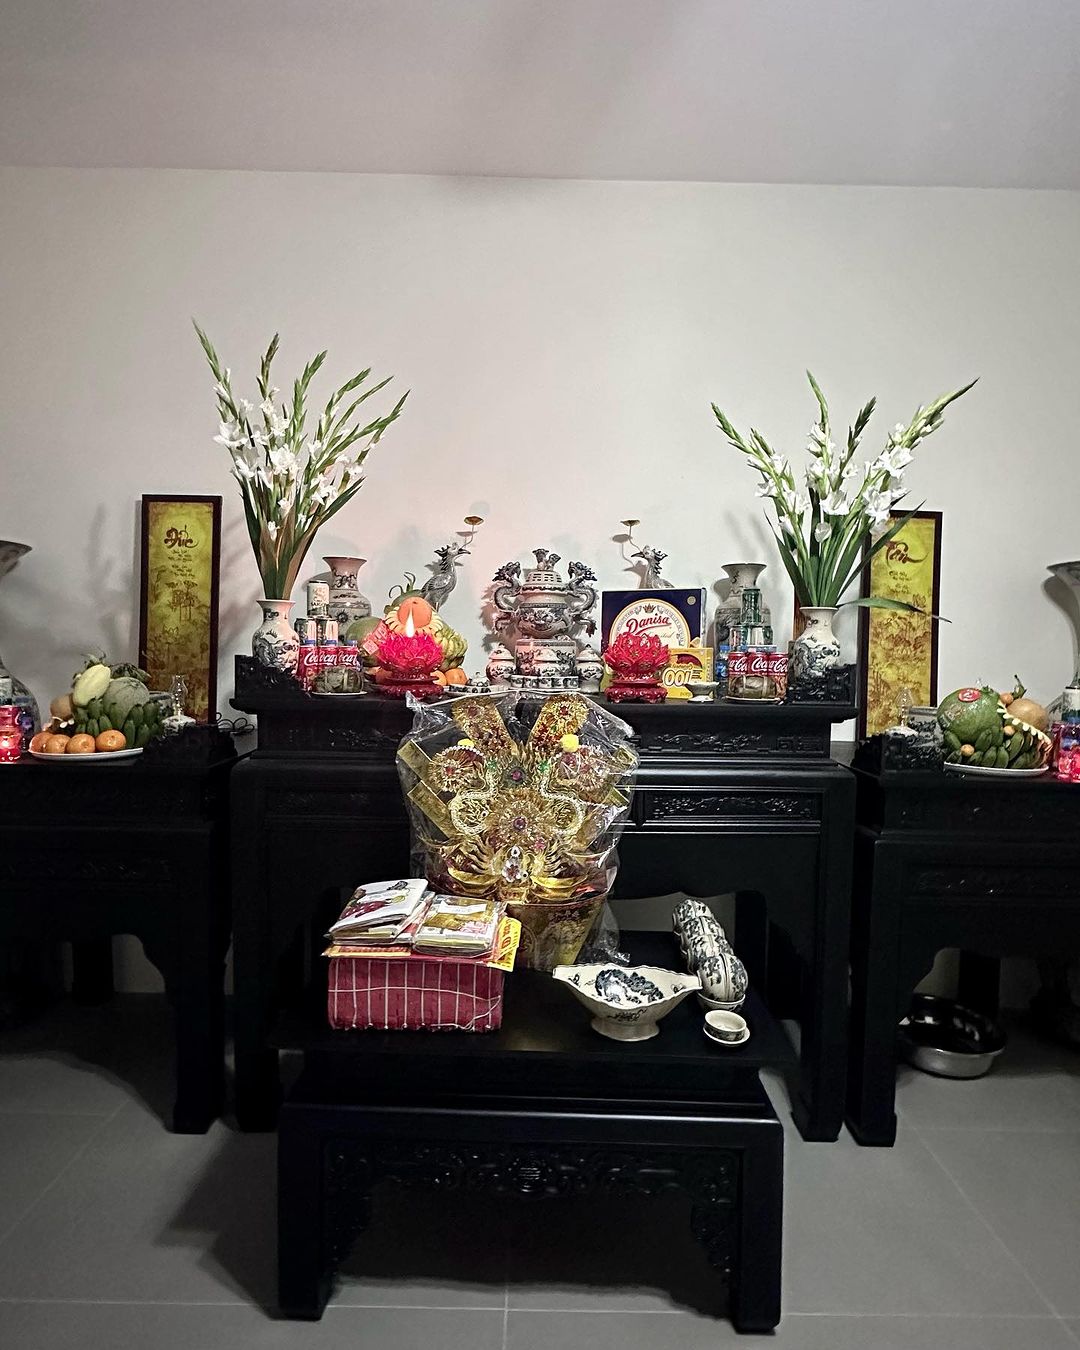 Quỳnh Lương ''unbox'' biệt thự mới đúng Mùng 1 Tết, khoe nhà rộng đến nỗi sắm nội thất không xuể- Ảnh 5.